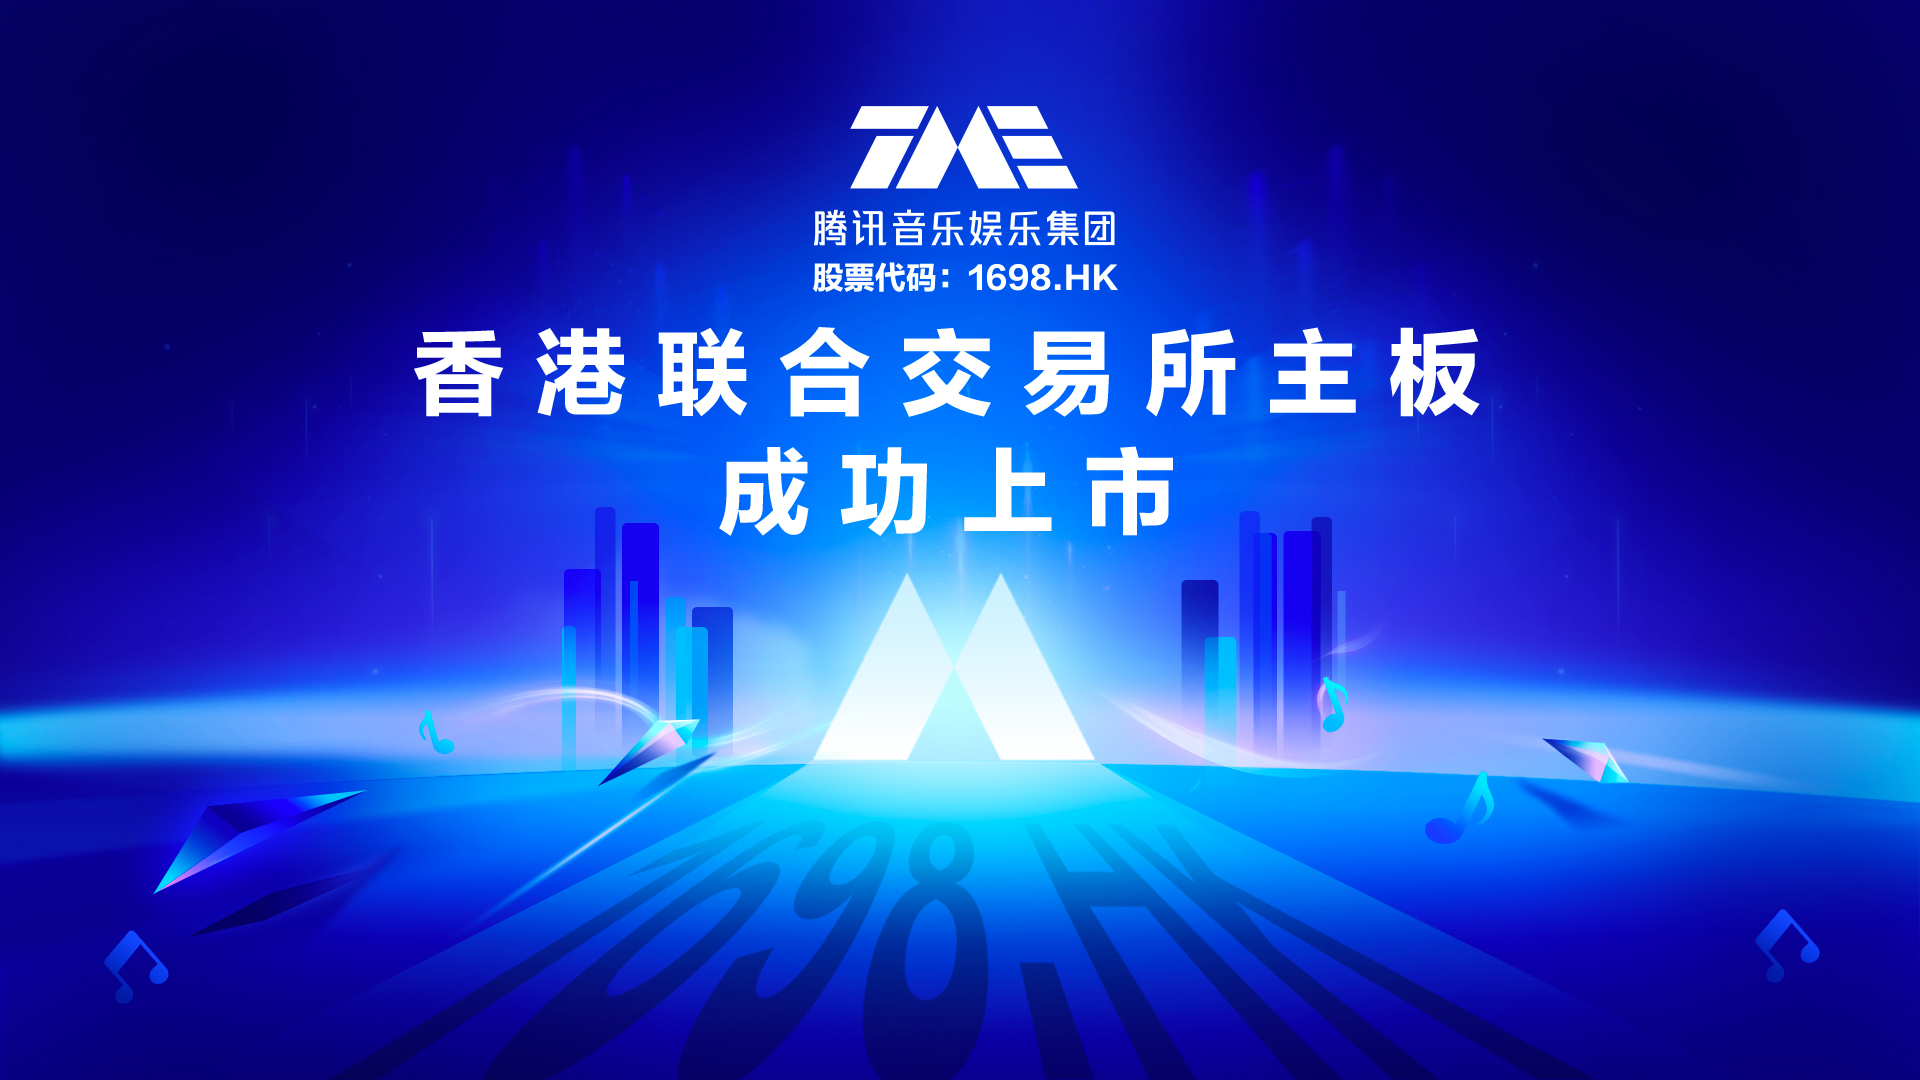 騰訊音樂娛樂集團今日成功於香港聯合交易所主板上市